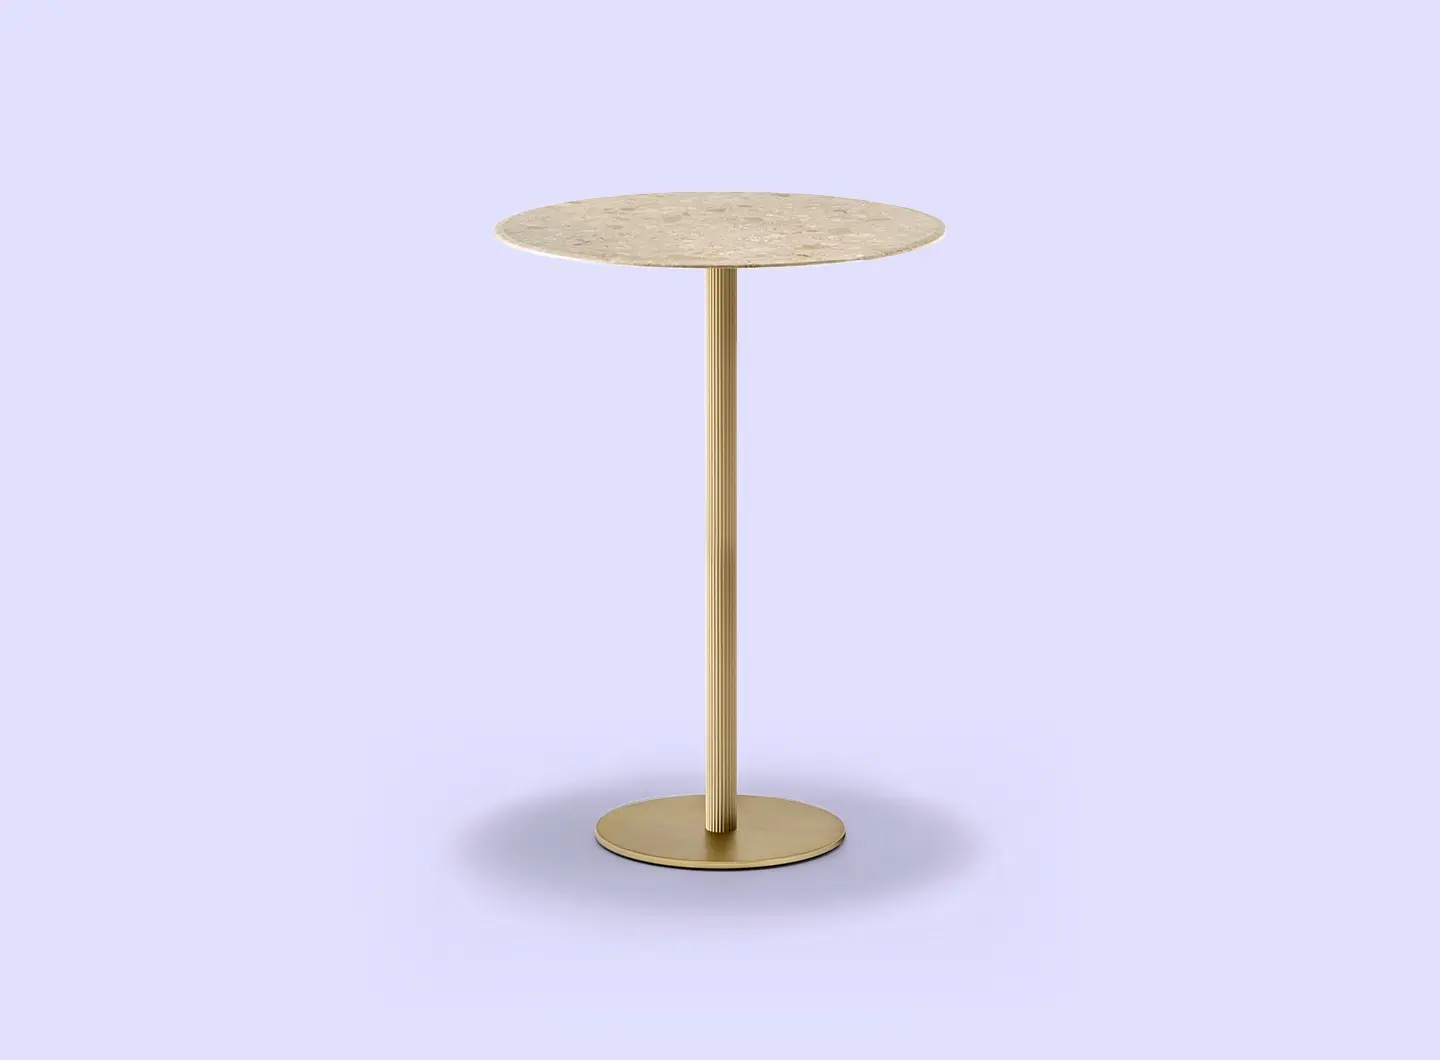 Pedrali SPA - Blume Table